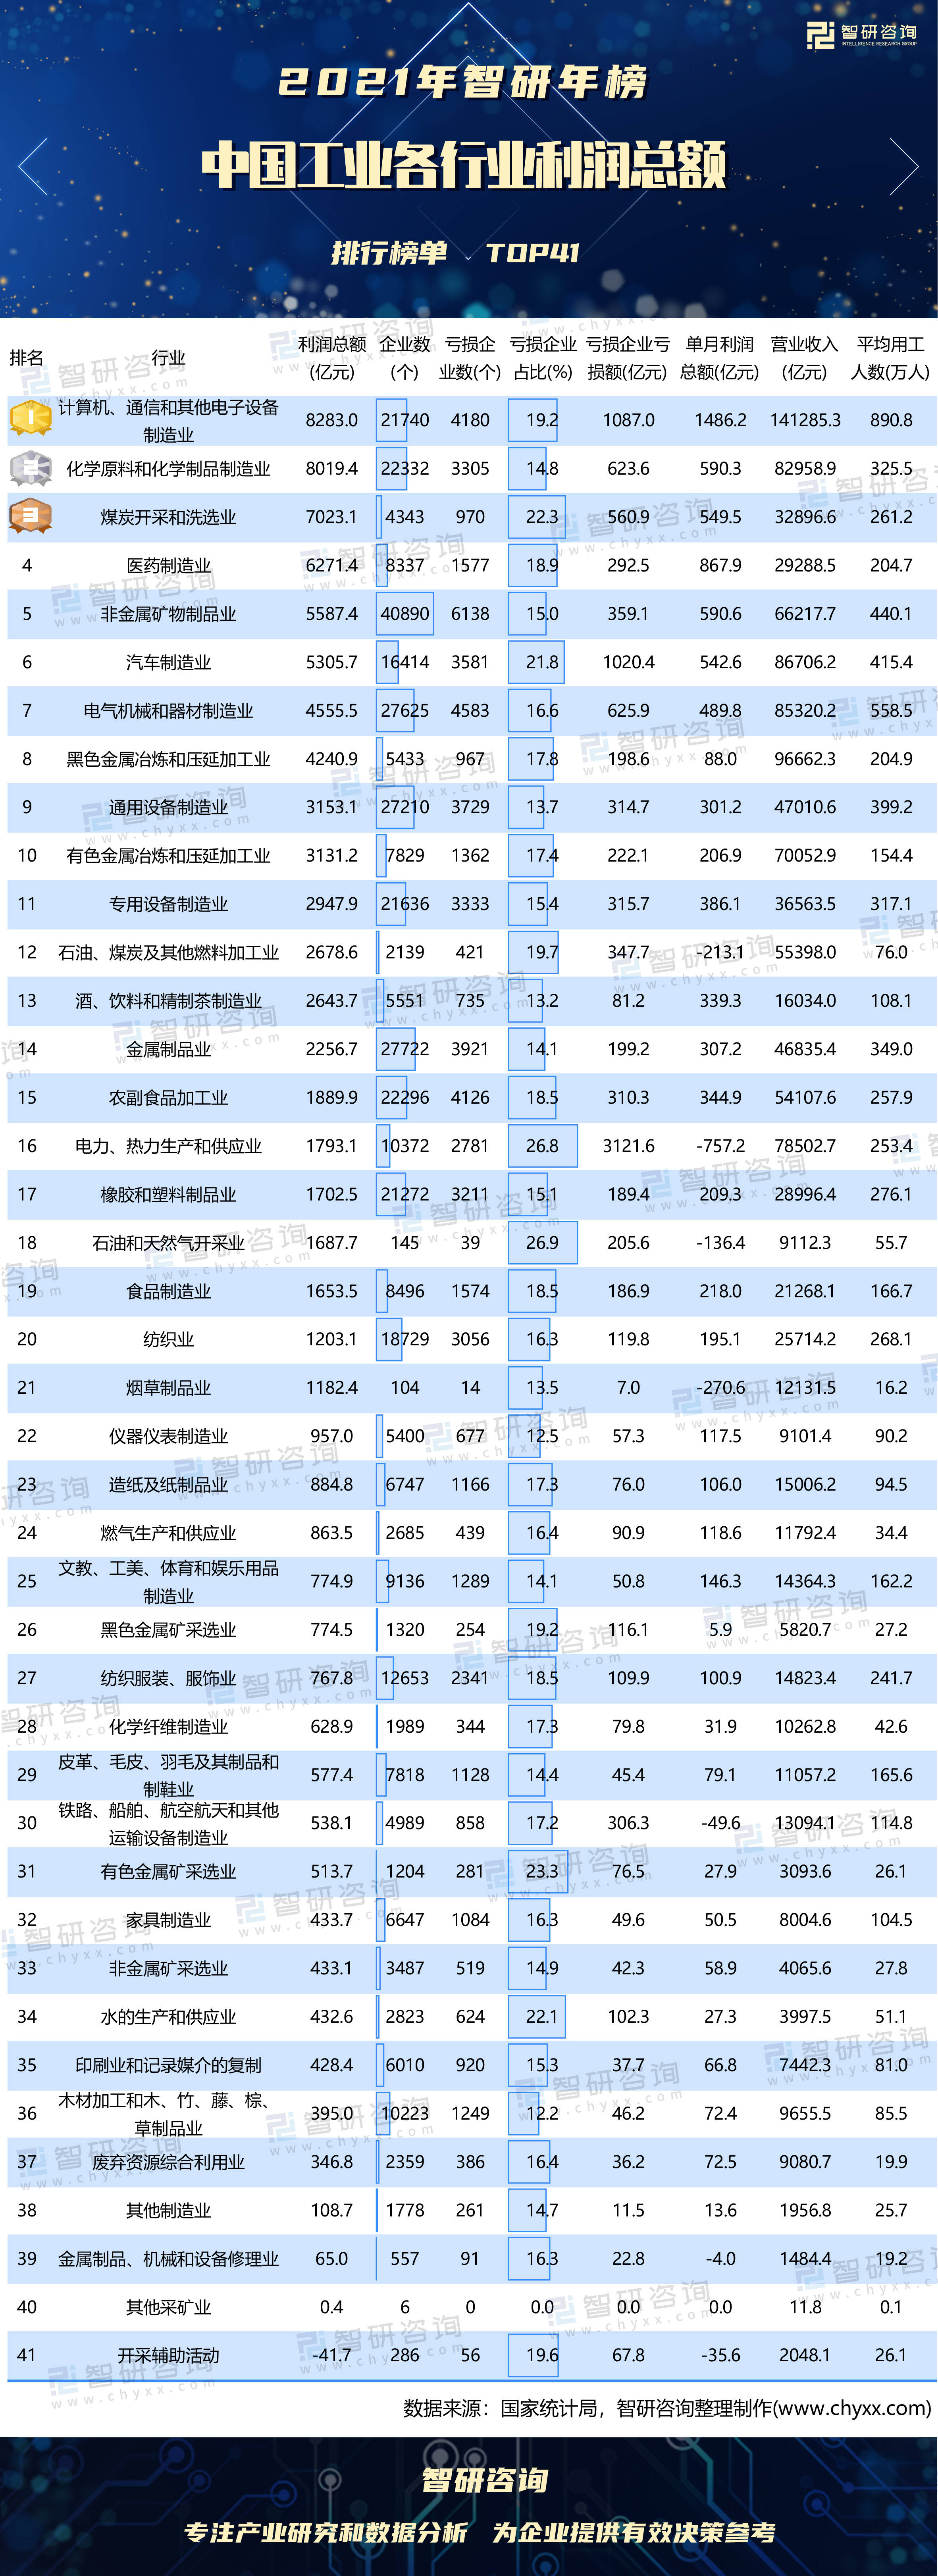 2021暴利行业排行榜_2021年中国工业各行业利润总额排行榜:非金属矿物制品业企业数最多